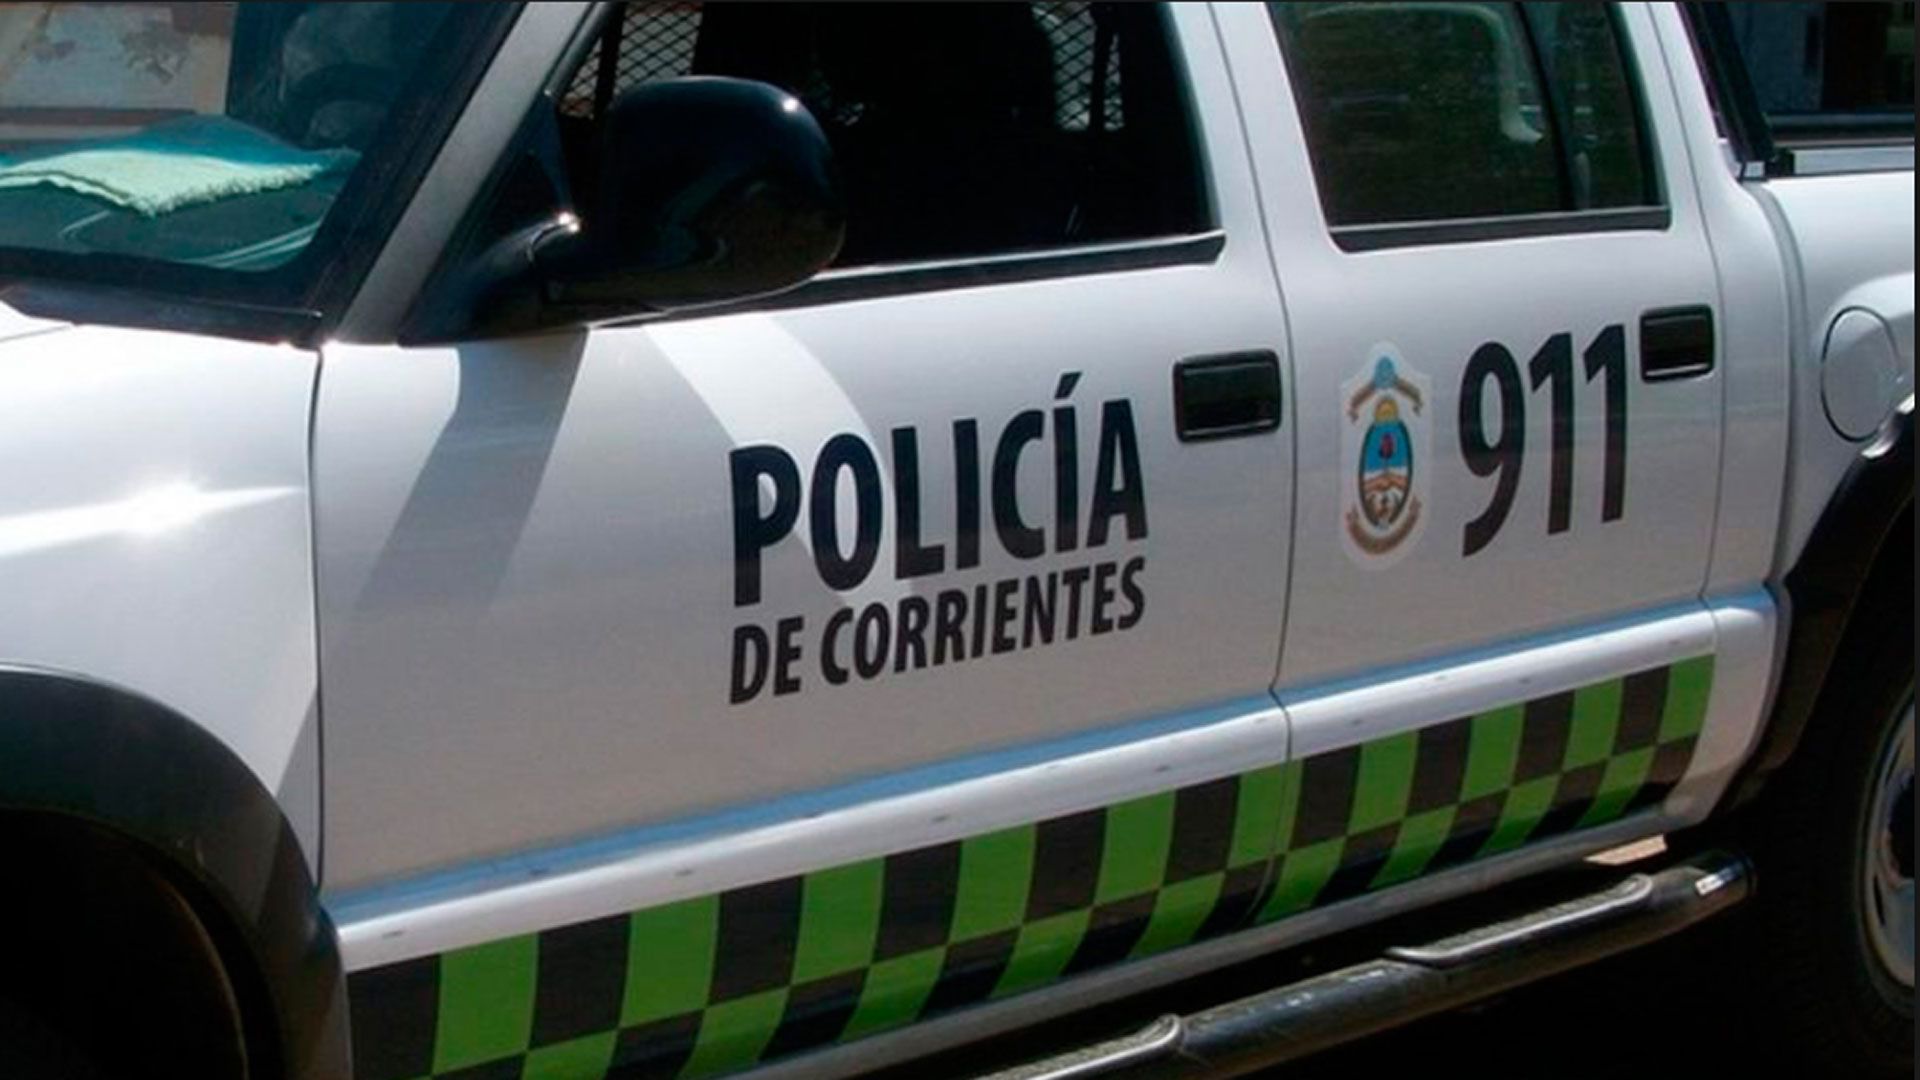 El cuerpo fue hallado en una zona rural de Corrientes.